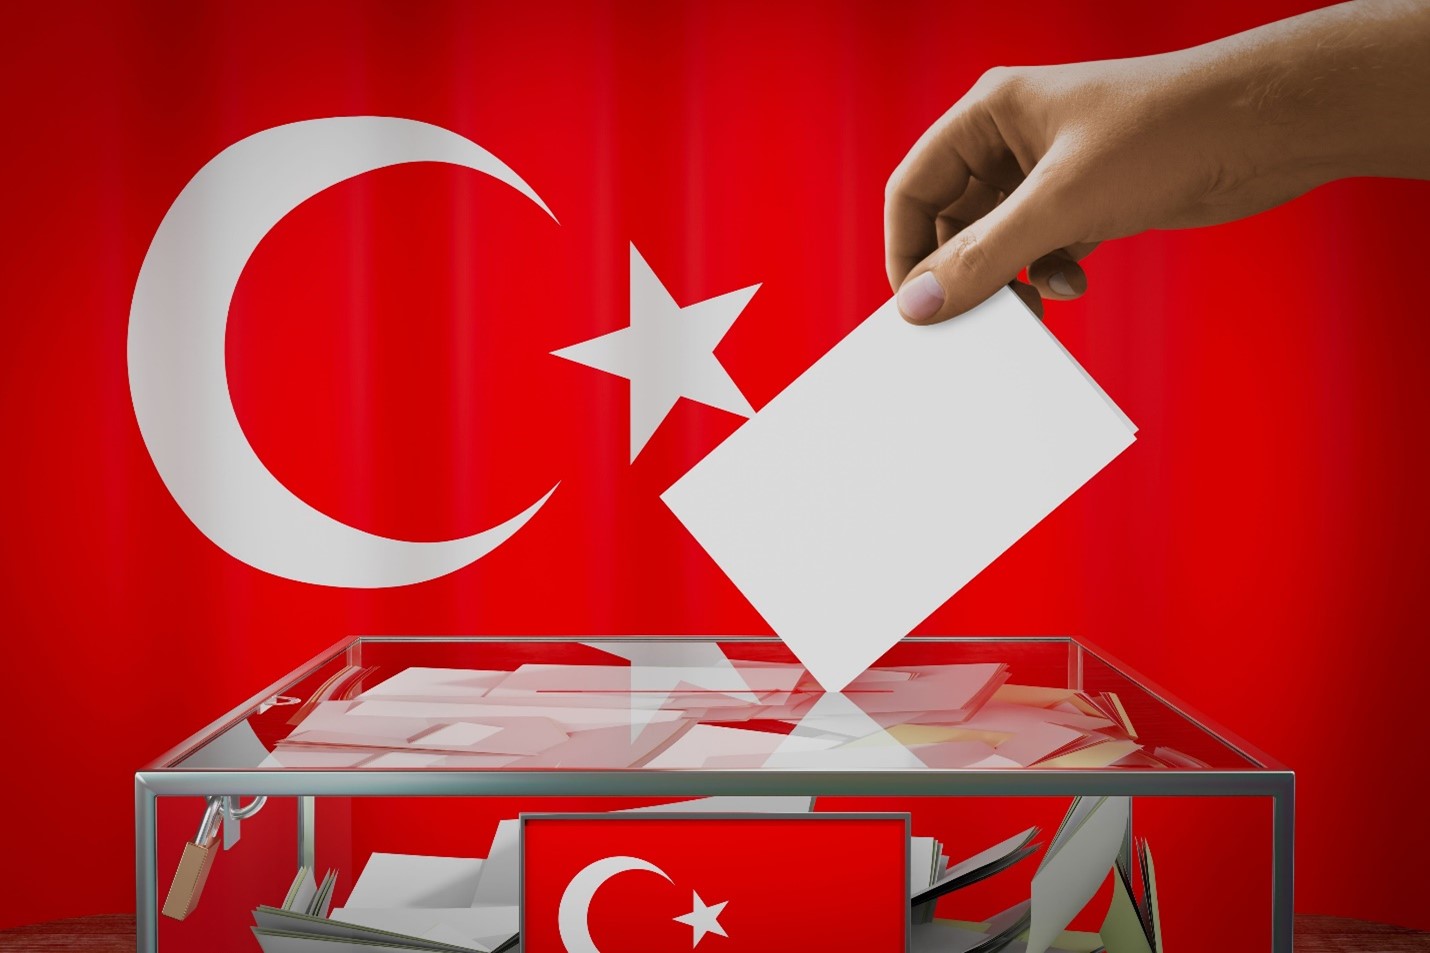 Imamoglu vodi u Istanbulu, u Ankari kandidat opozicije već proglasio pobjedu